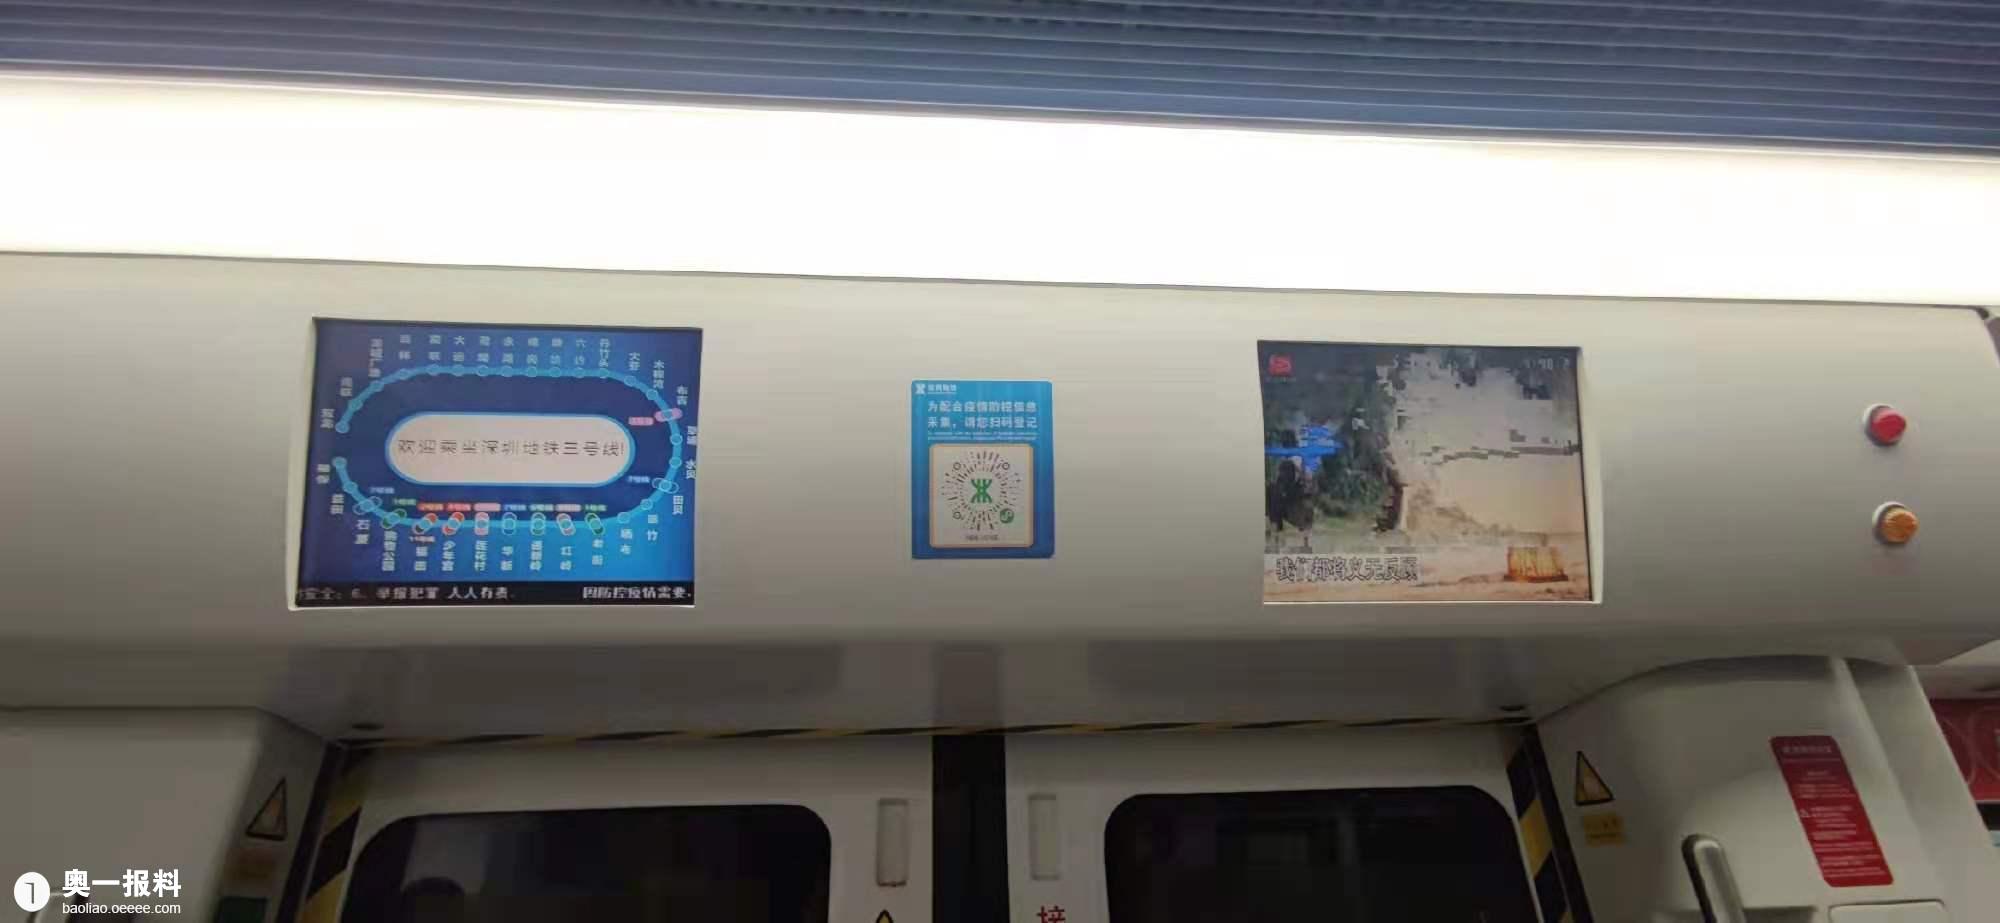 深圳地铁显示屏不显示到站地点